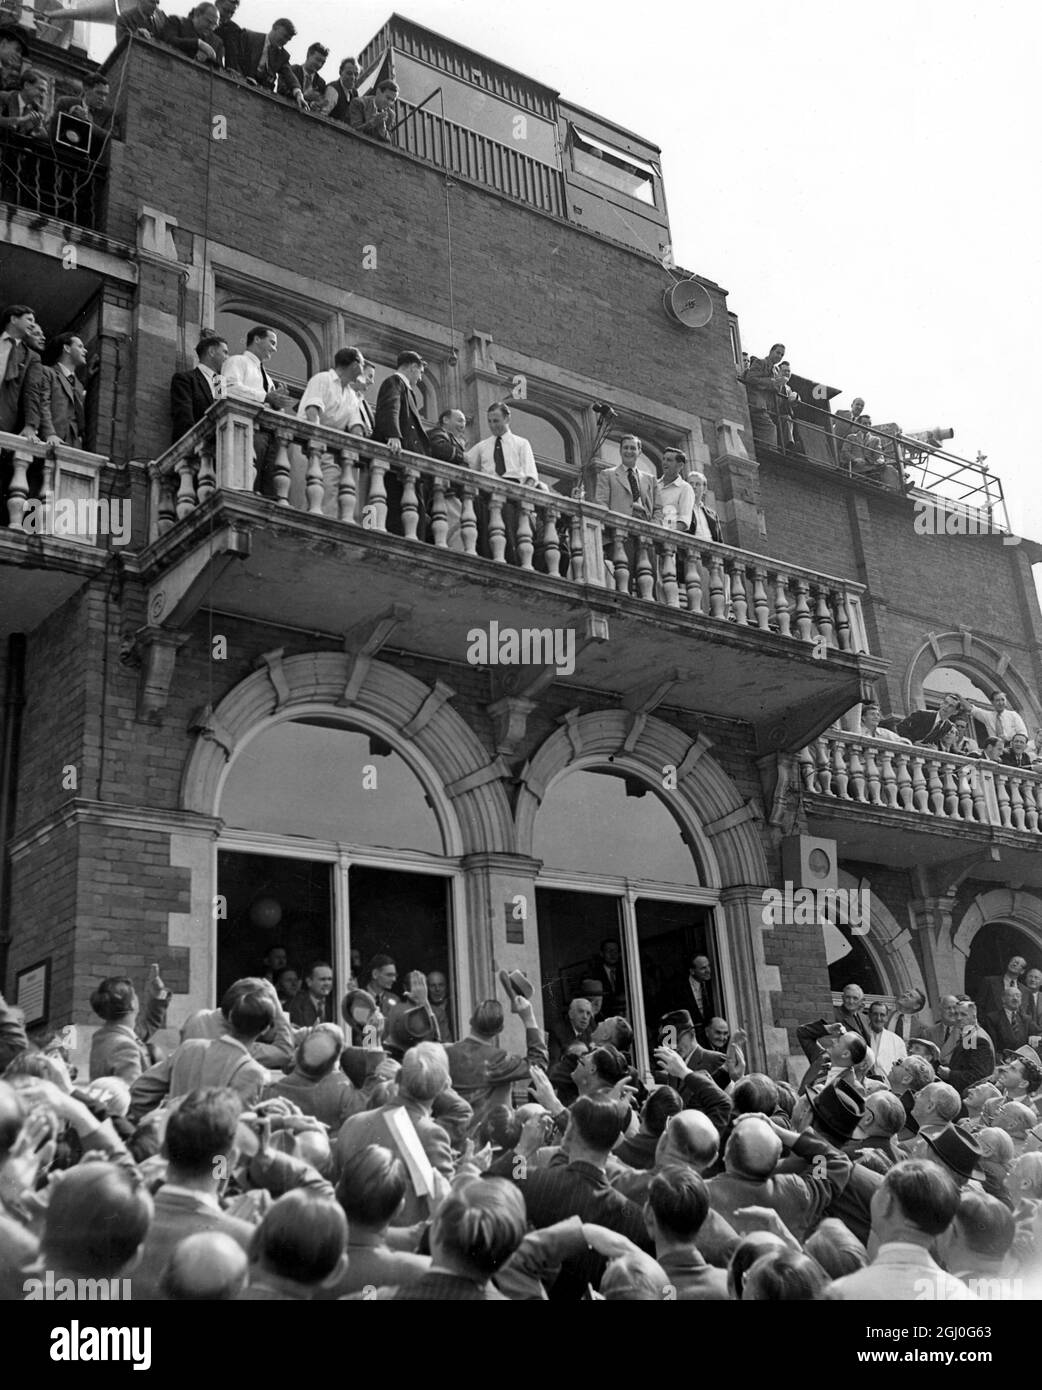 5. Testspiel - The Ashes England gegen Australien die Szene im Pavillion nach dem Spiel. Len Hutton und Hassett, die jeweiligen Kapitäne schütteln sich die Hände auf dem Balkon am Oval. August 1953 Stockfoto